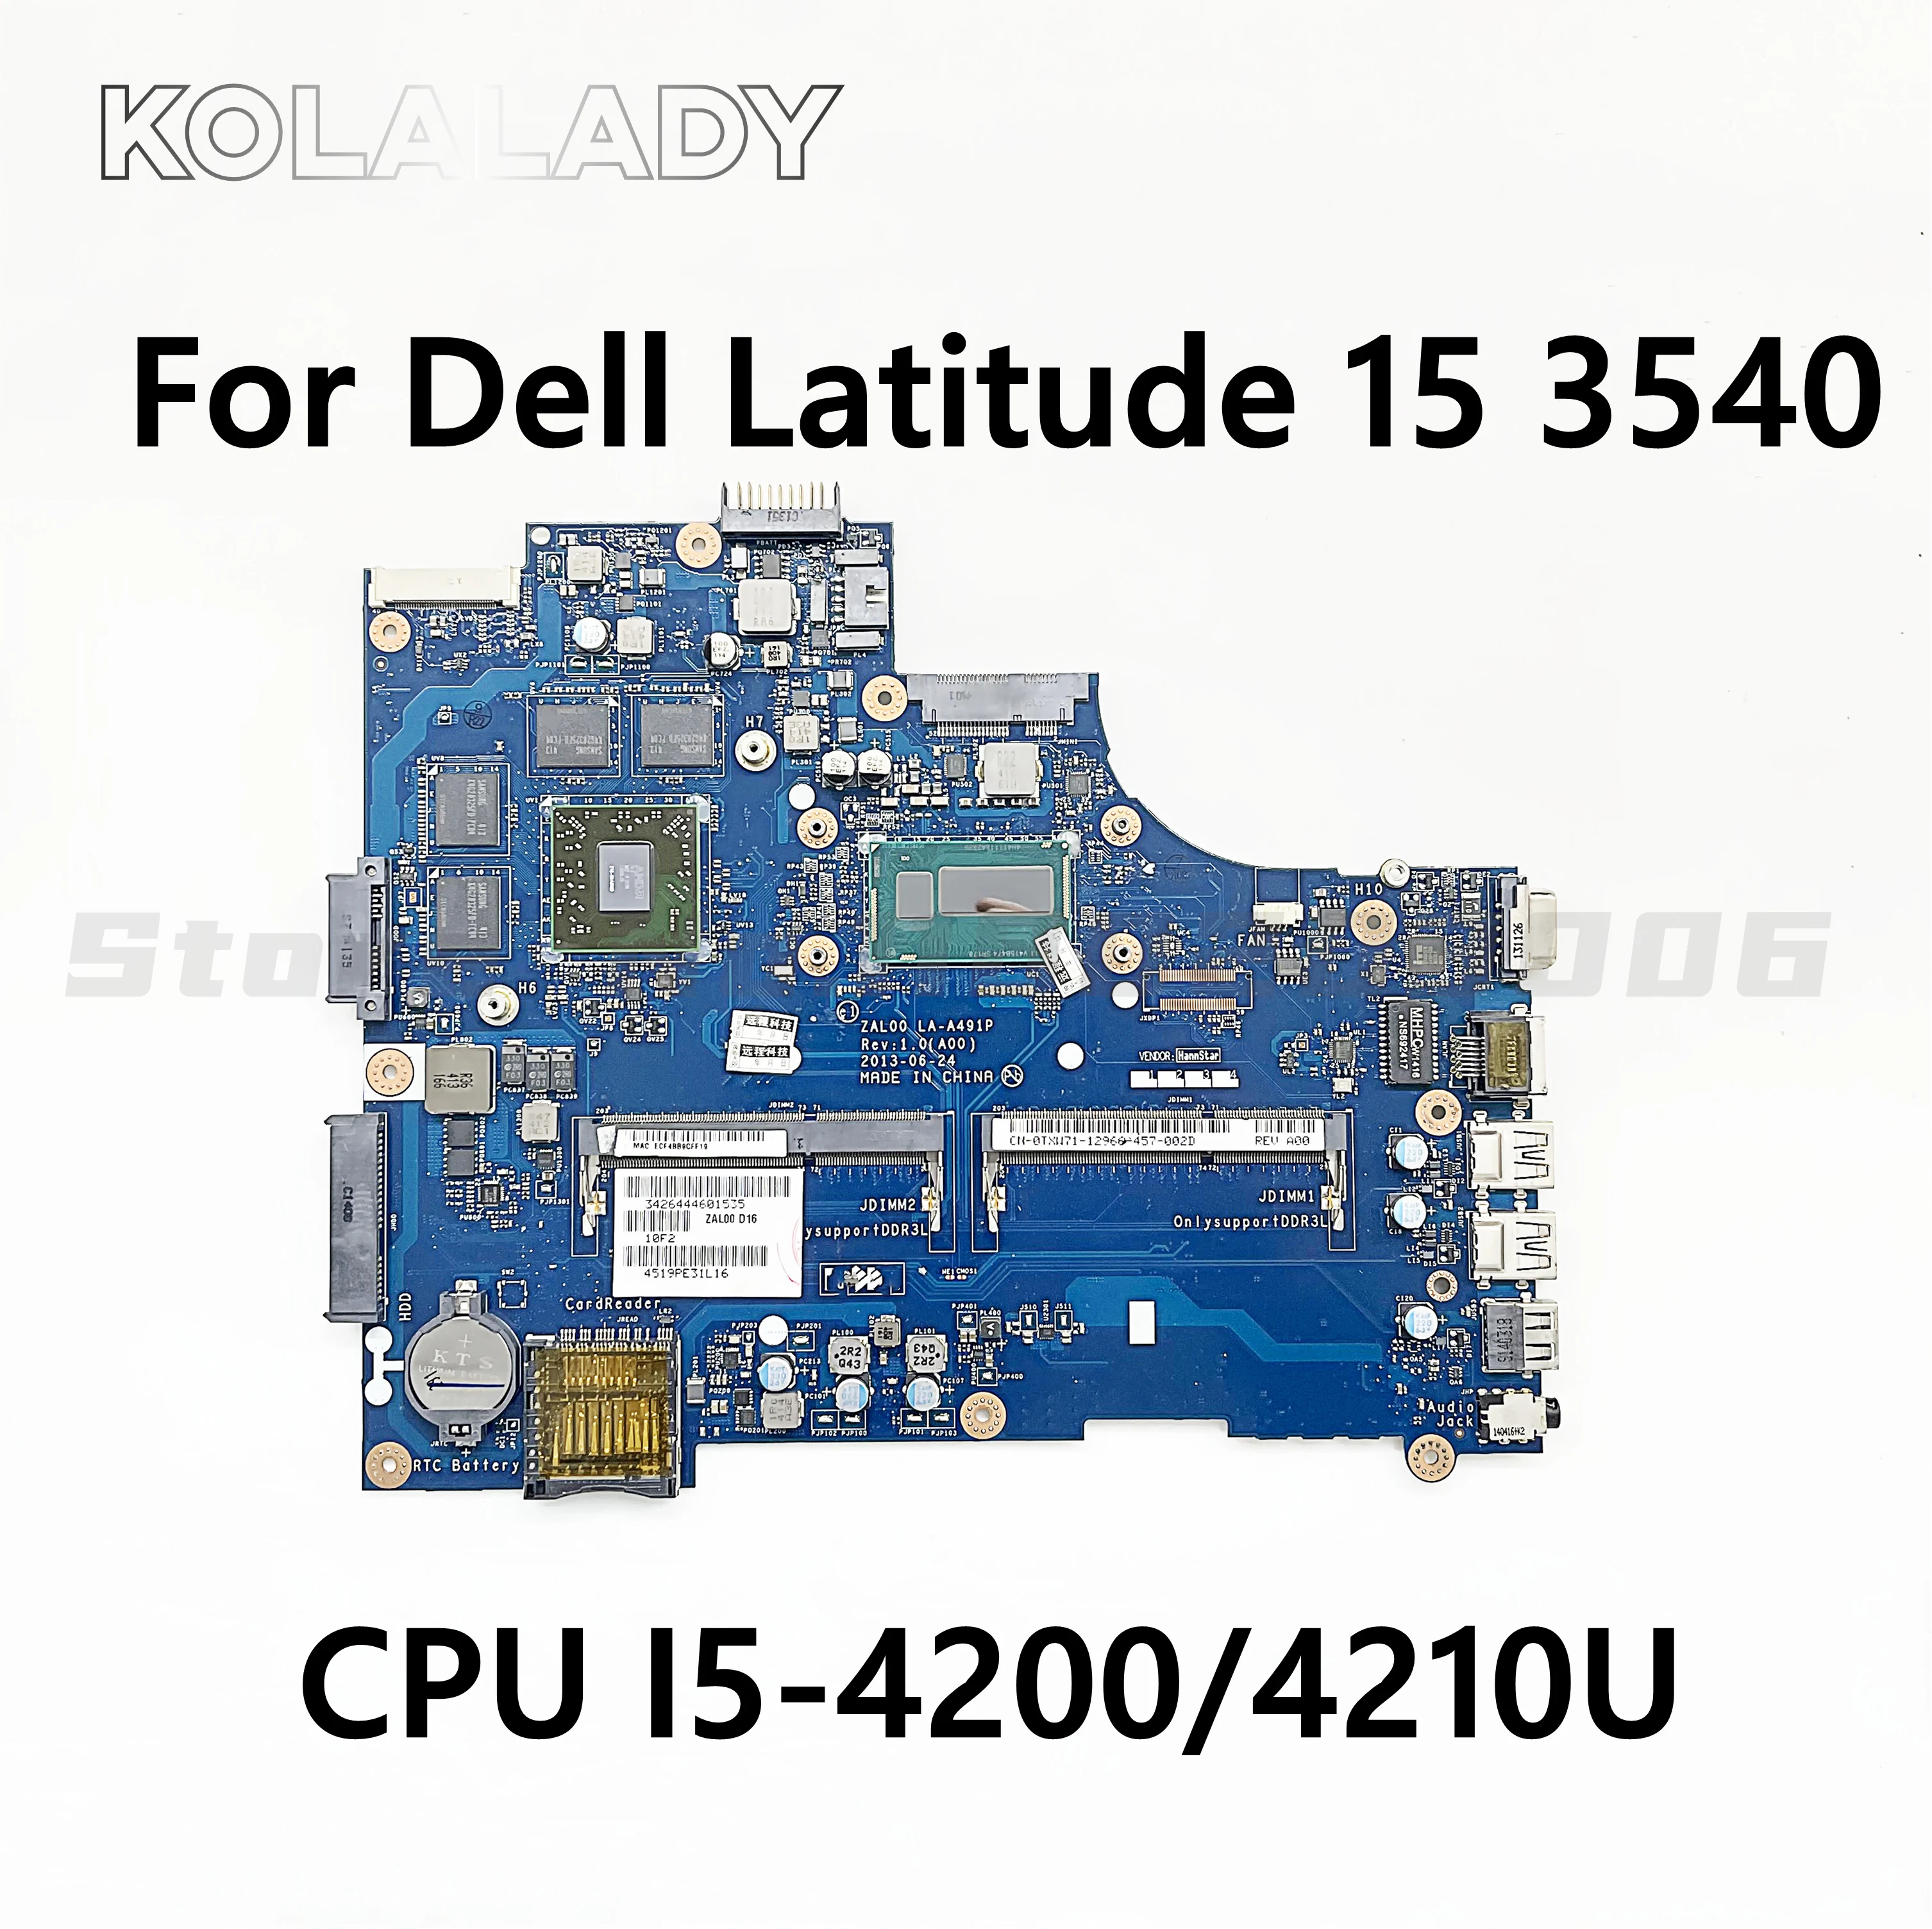 Для DELL Latitude 15 3540 Материнская плата ноутбука CN-08MDVW 08MDVW 8MDVW LA-A491P с процессором I5-4200/4210U 100% работает хорошо